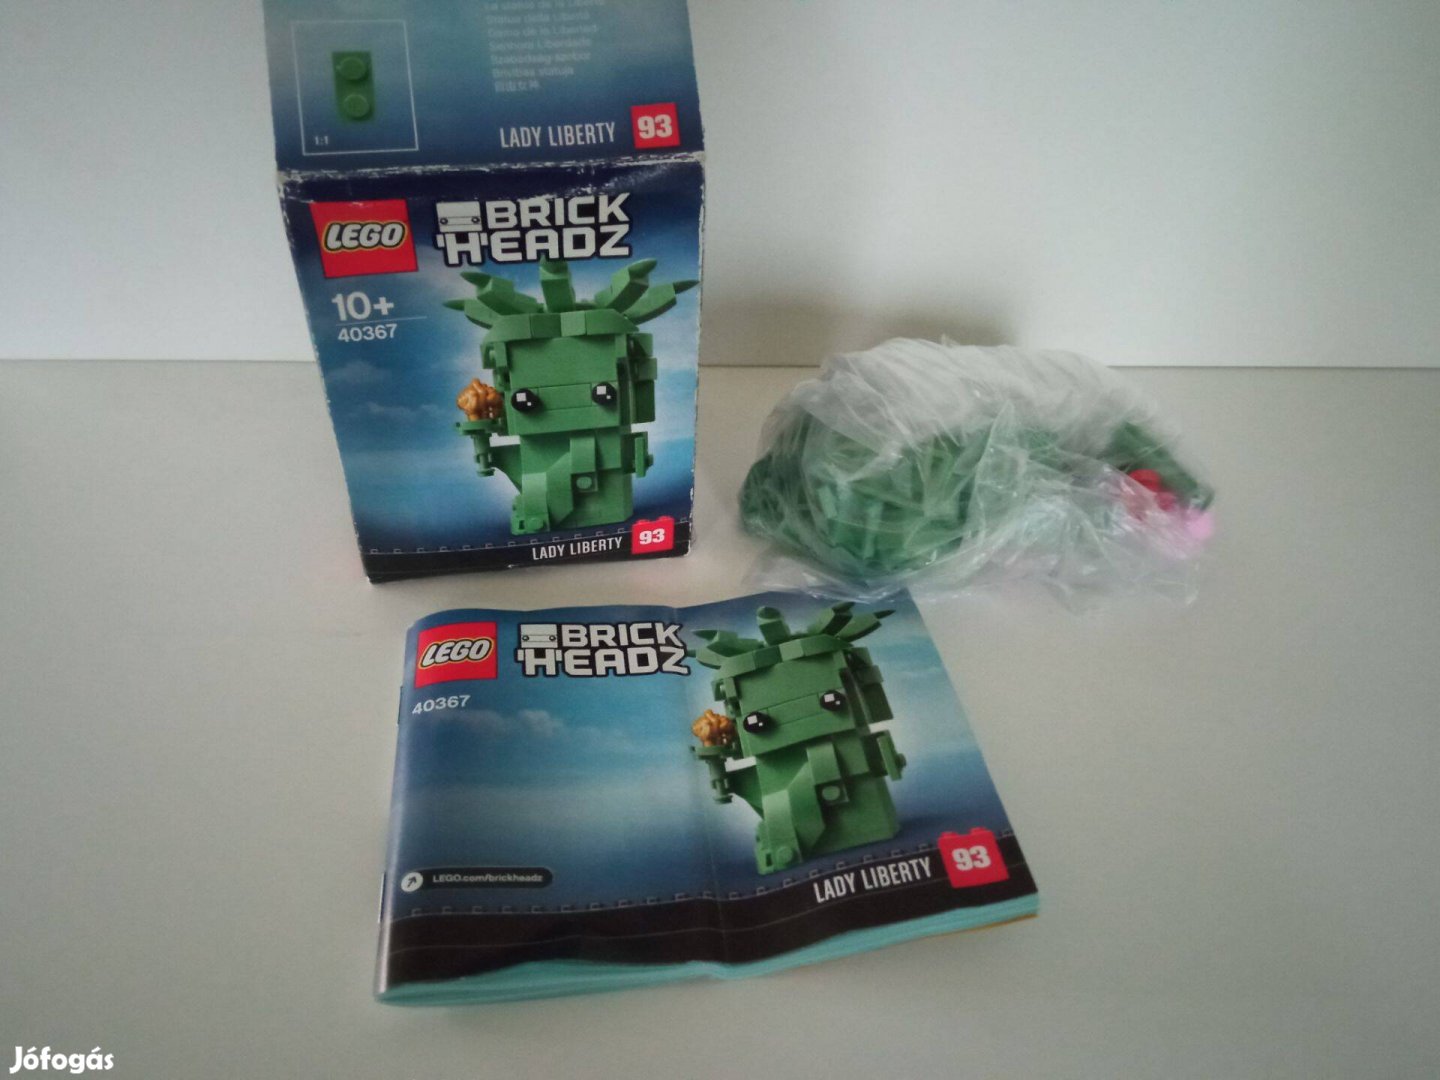 Lego Brickheadz 40367 Lady Liberty